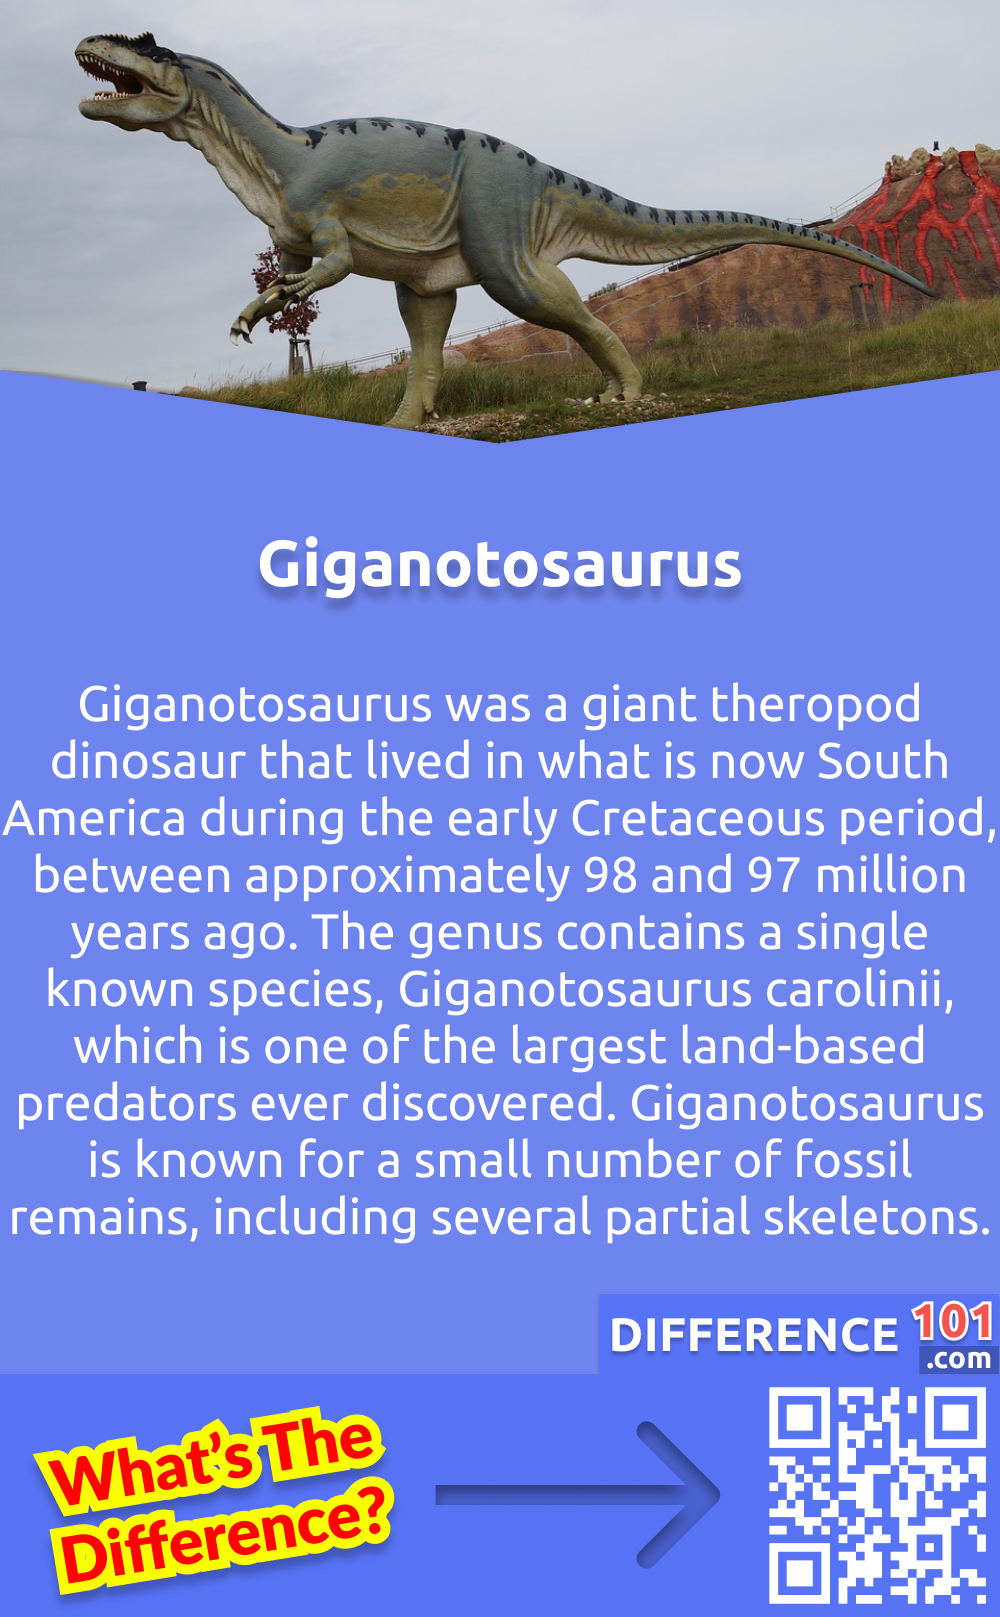 O que é Giganosaurus? O Giganotosaurus era um dinossauro gigante terópode que viveu no que é hoje a América do Sul durante o início do Cretáceo, entre aproximadamente 98 e 97 milhões de anos atrás. O gênero contém uma única espécie conhecida, o Giganotosaurus carolinii, que é um dos maiores predadores terrestres já descobertos. O Giganotosaurus é conhecido por um pequeno número de restos fósseis, incluindo vários esqueletos parciais.